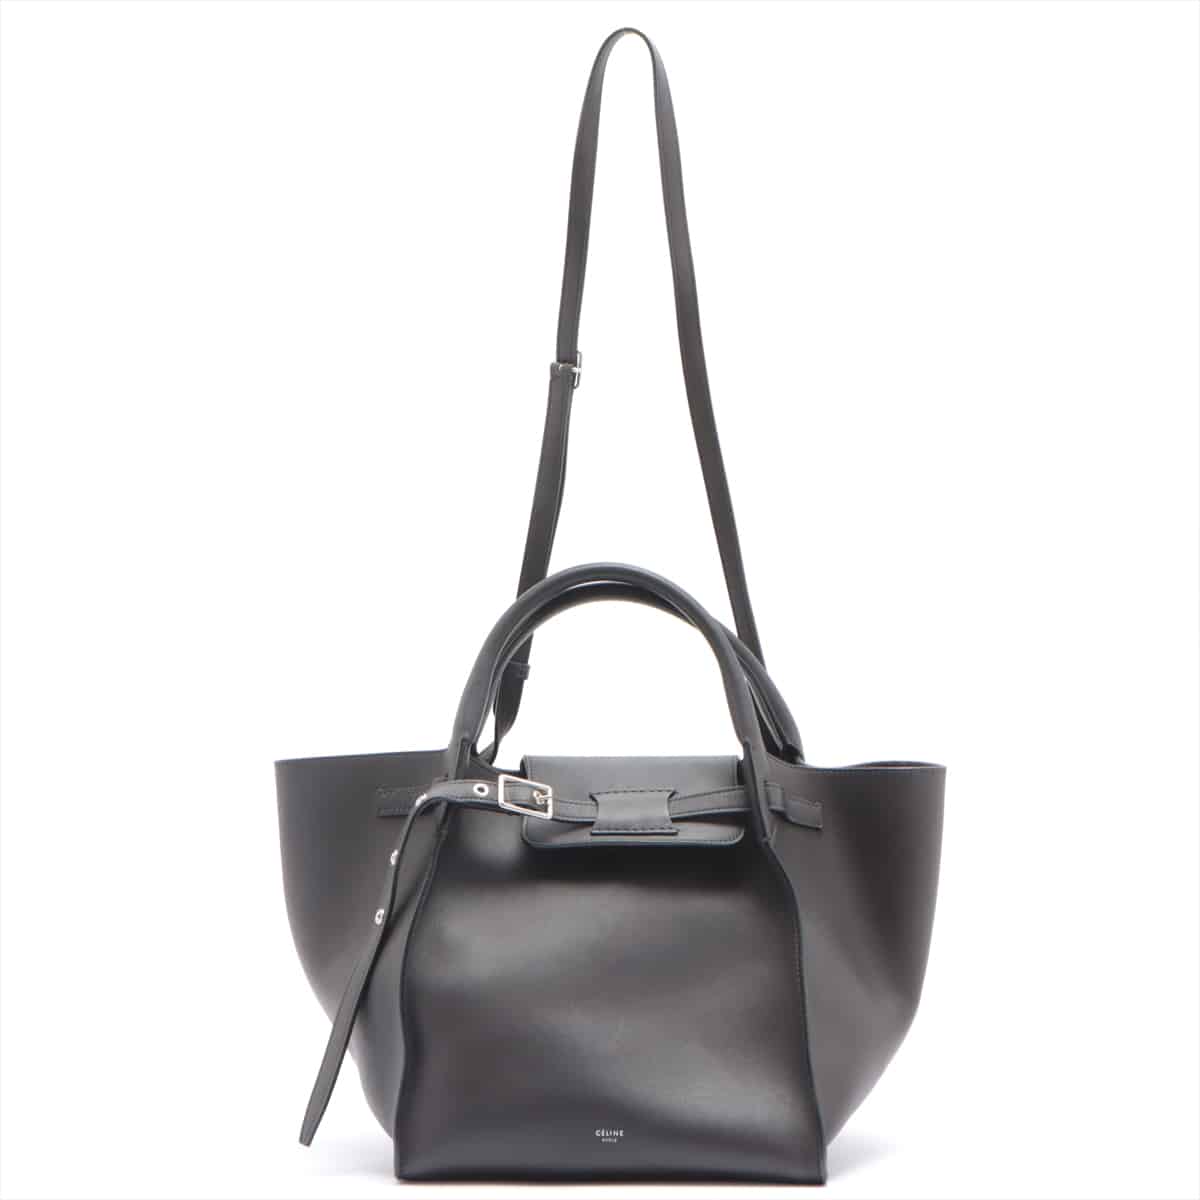 CELINE BIG BAG small Leather 2way handbag Grey